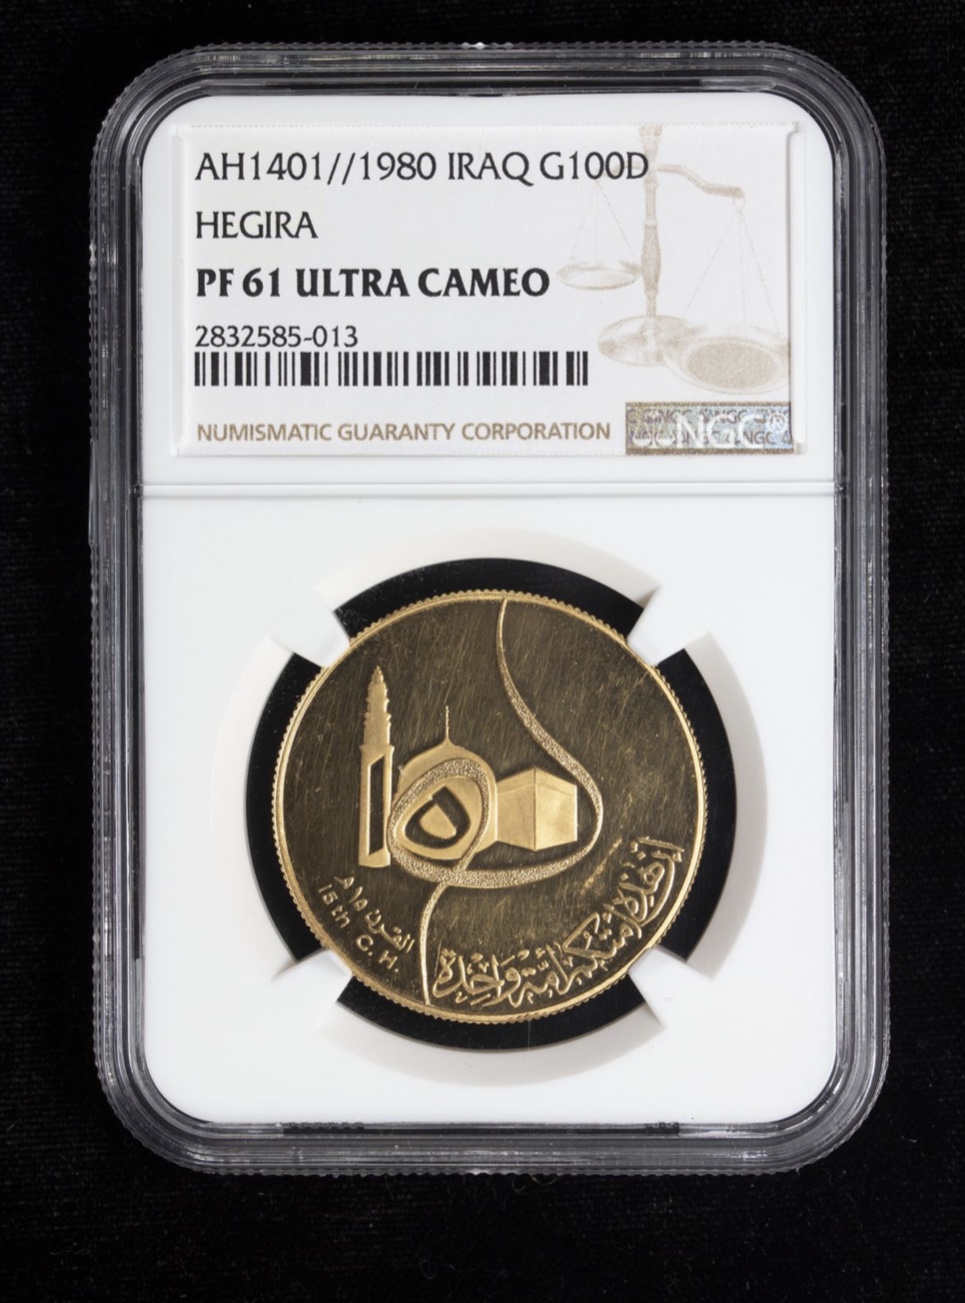 1400 AH 1981 Iraq 100 Dinar Gold Coin KM 151 NGC PF 61 Ultra Cameo Saddam Era